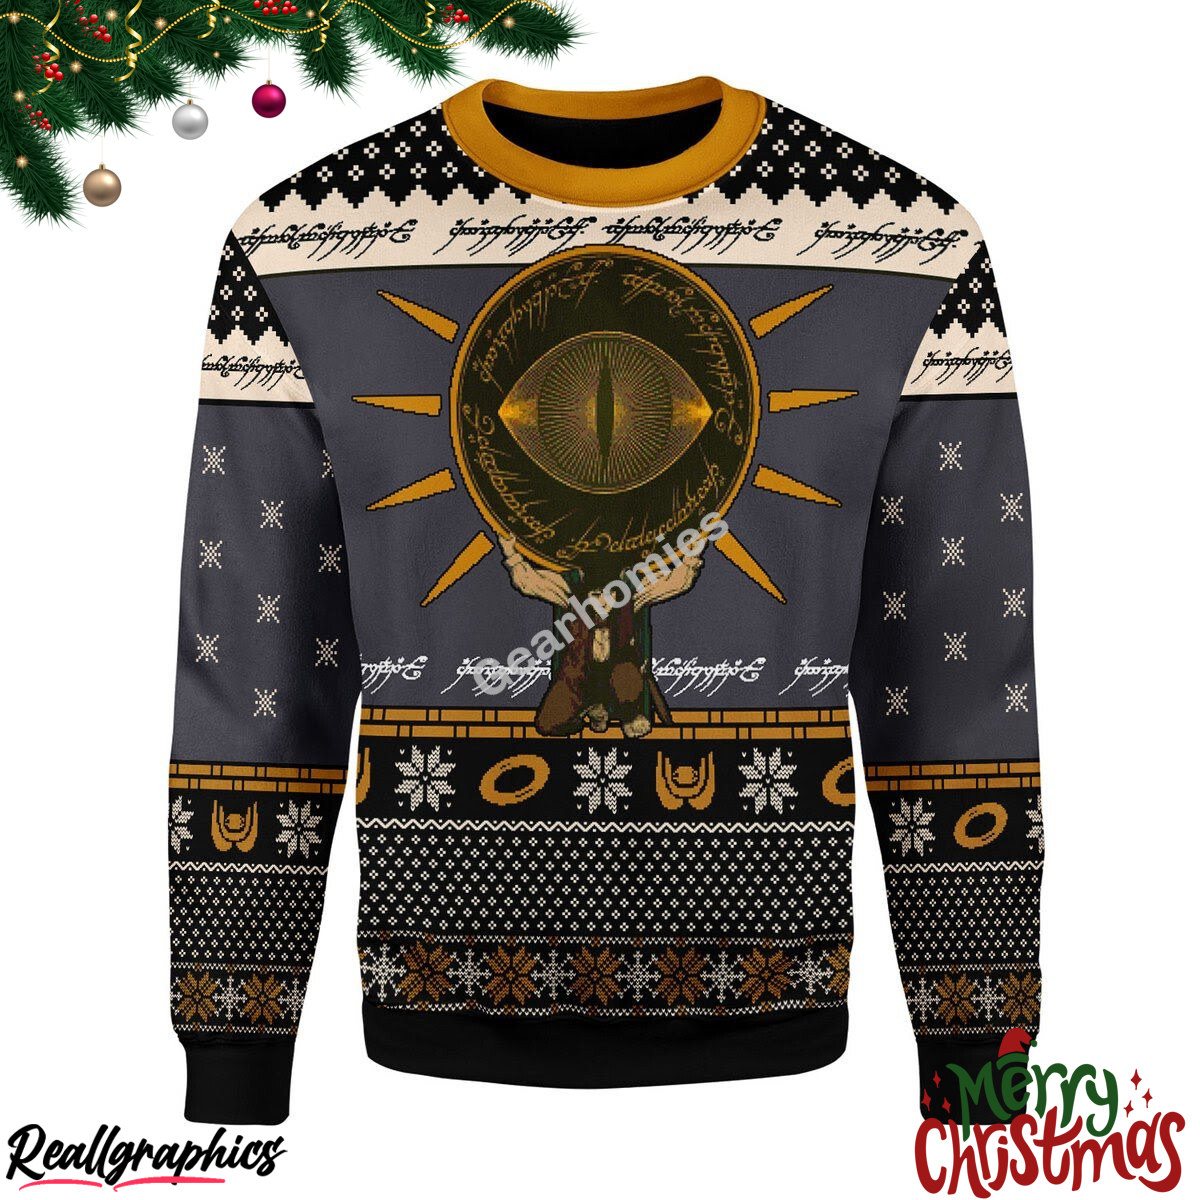 Merry Christmas Lotr Burden Christmas Ugly Sweatshirt - Sweater